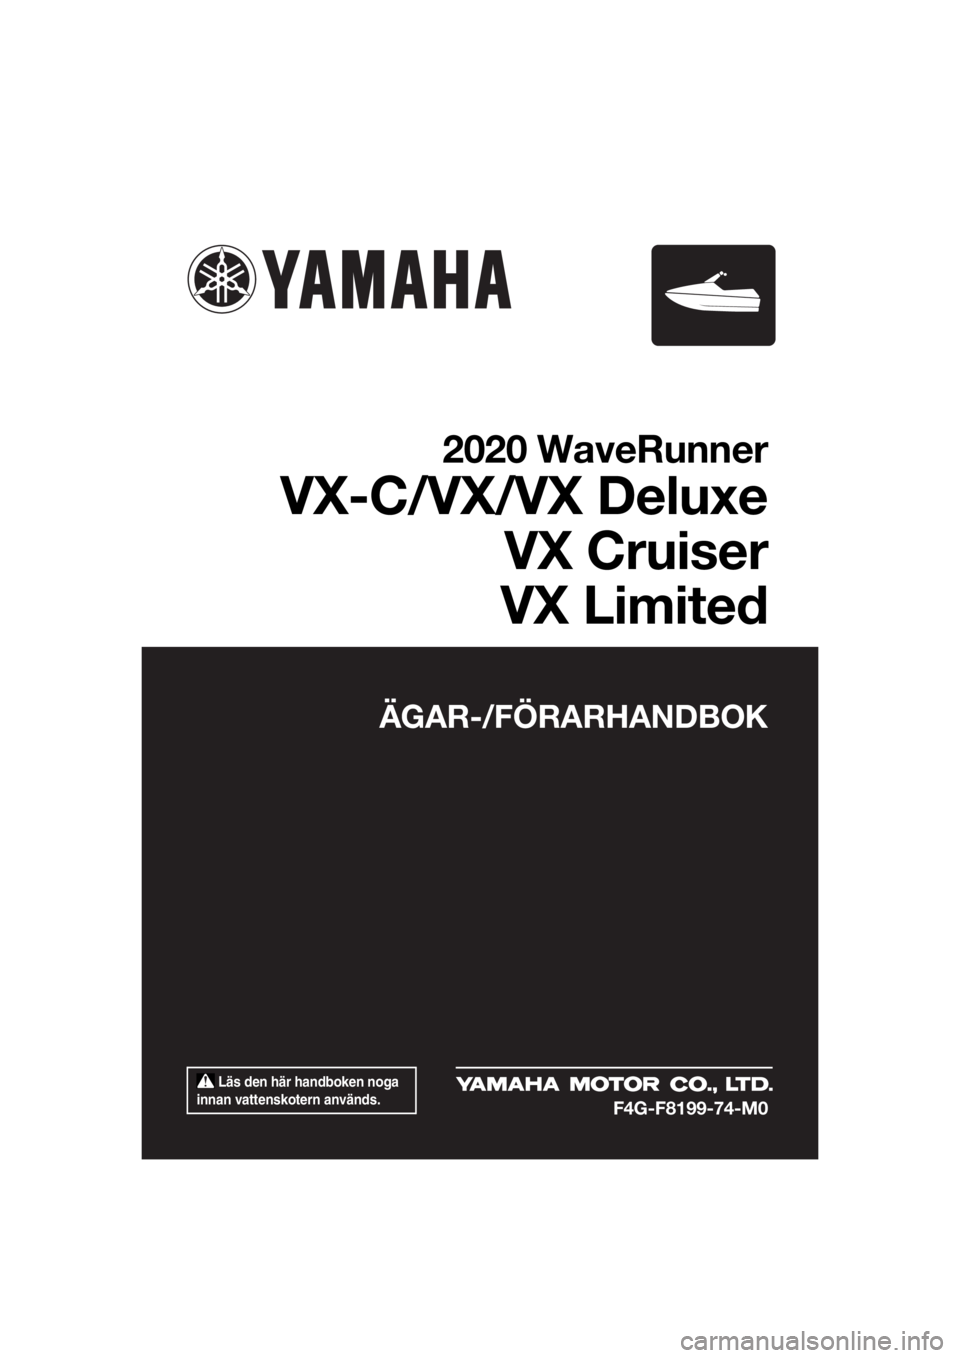 YAMAHA VX-C 2020  Bruksanvisningar (in Swedish)  Läs den här handboken noga 
innan vattenskotern används.
ÄGAR-/FÖRARHANDBOK
2020 WaveRunner
VX-C/VX/VX Deluxe
VX Cruiser
VX Limited
F4G-F8199-74-M0
UF4G74M0.book  Page 1  Monday, July 15, 2019  